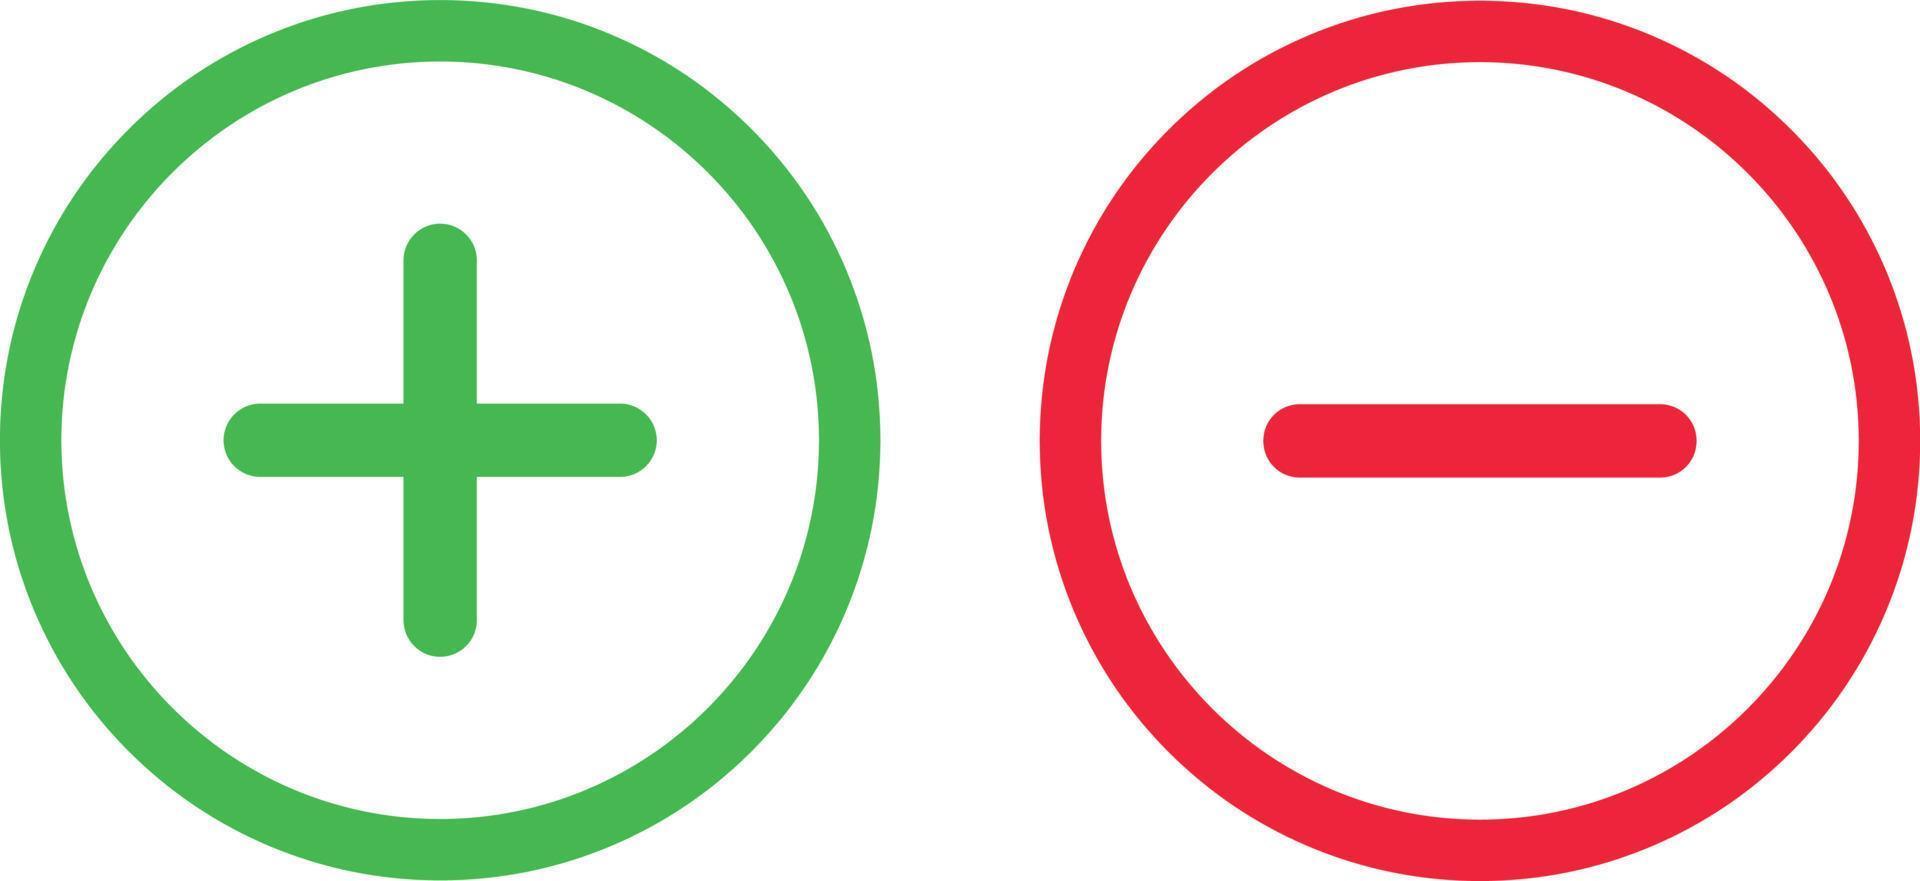 vert plus et rouge moins symboles, rond vecteur